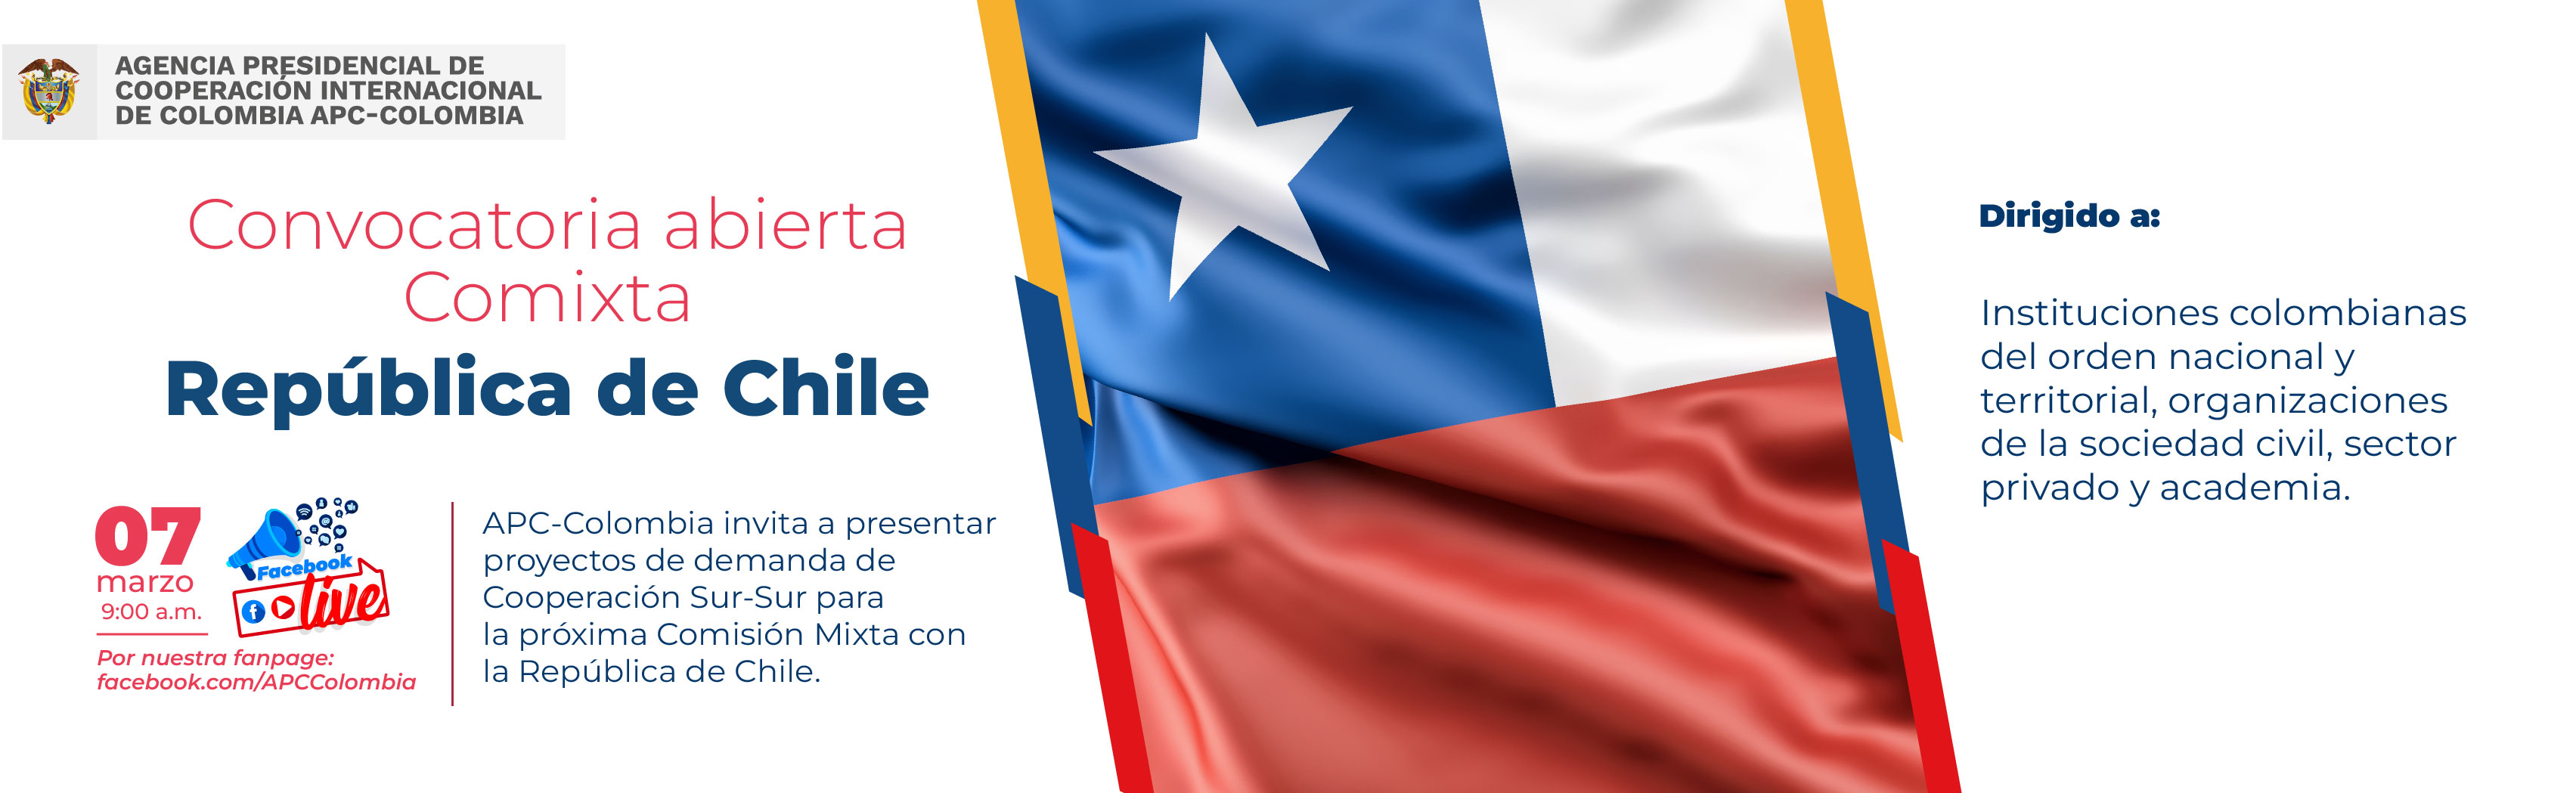  Imagen de invitación al Facebook Live para resolver dudas de la Comixta entre Colombia y Chile el martes siete de marzo a las nueve de la mañana